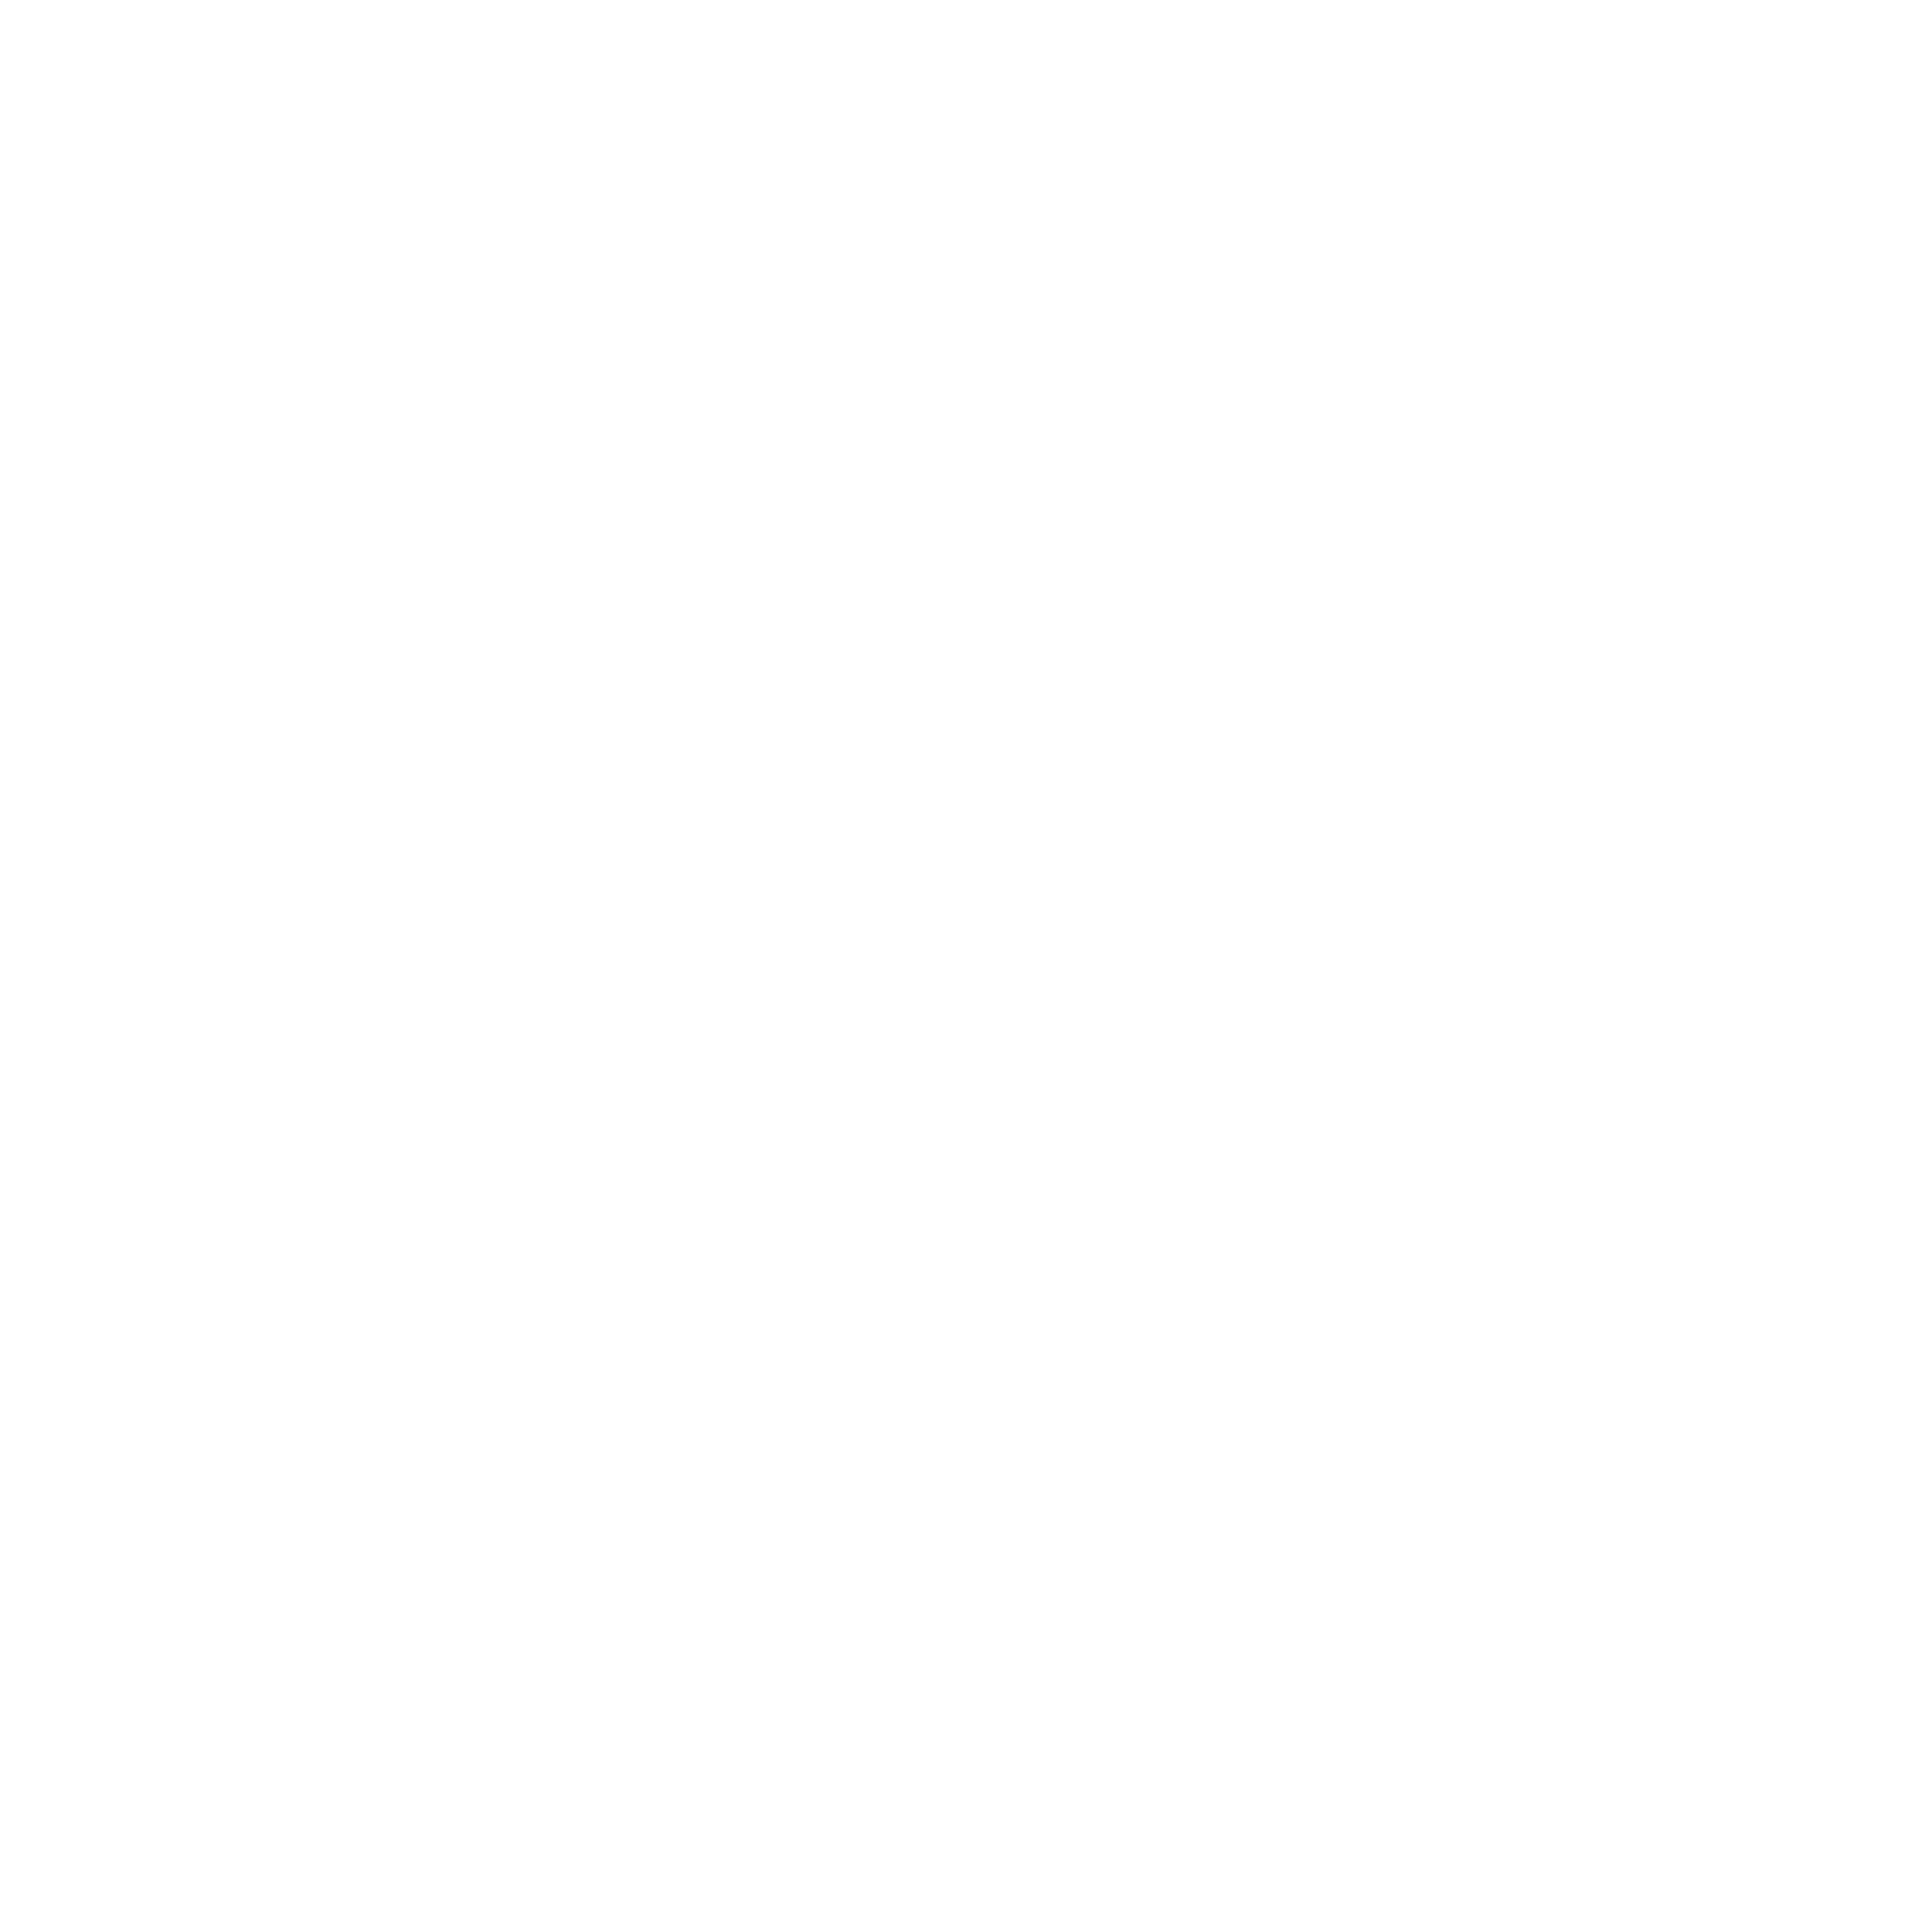 Litt Music